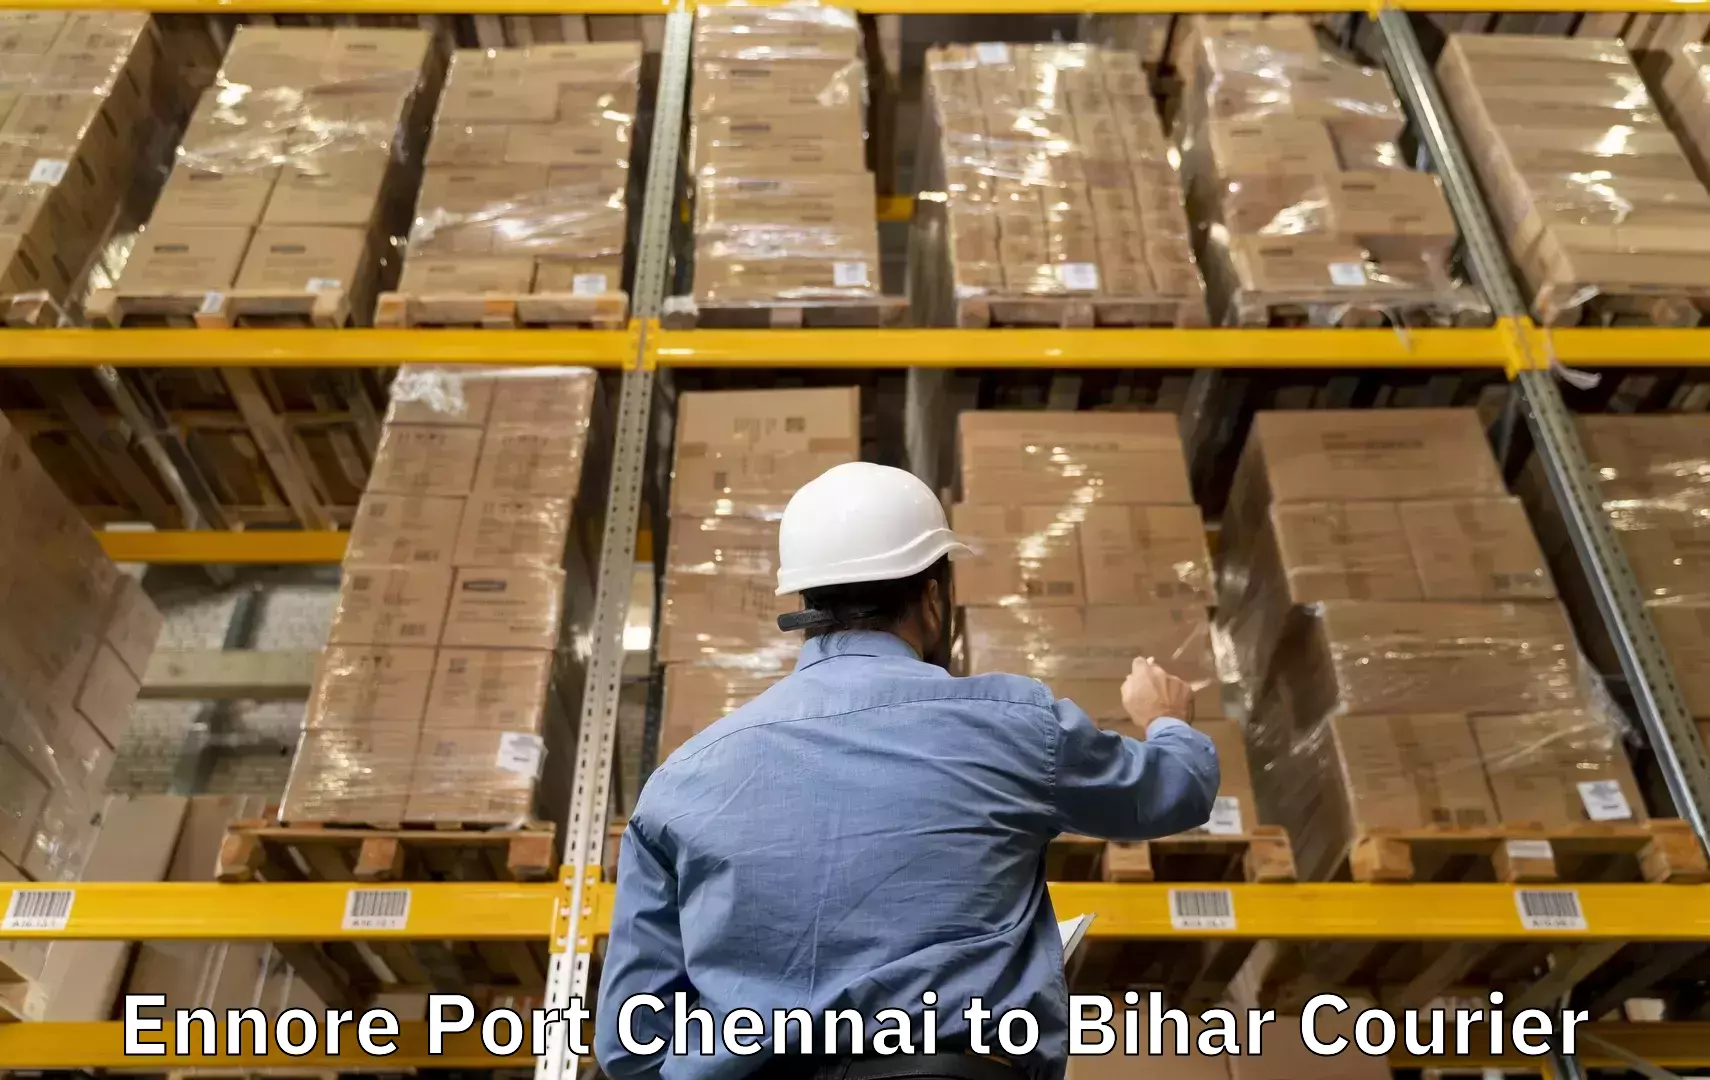 Baggage shipping logistics Ennore Port Chennai to Manjhaul